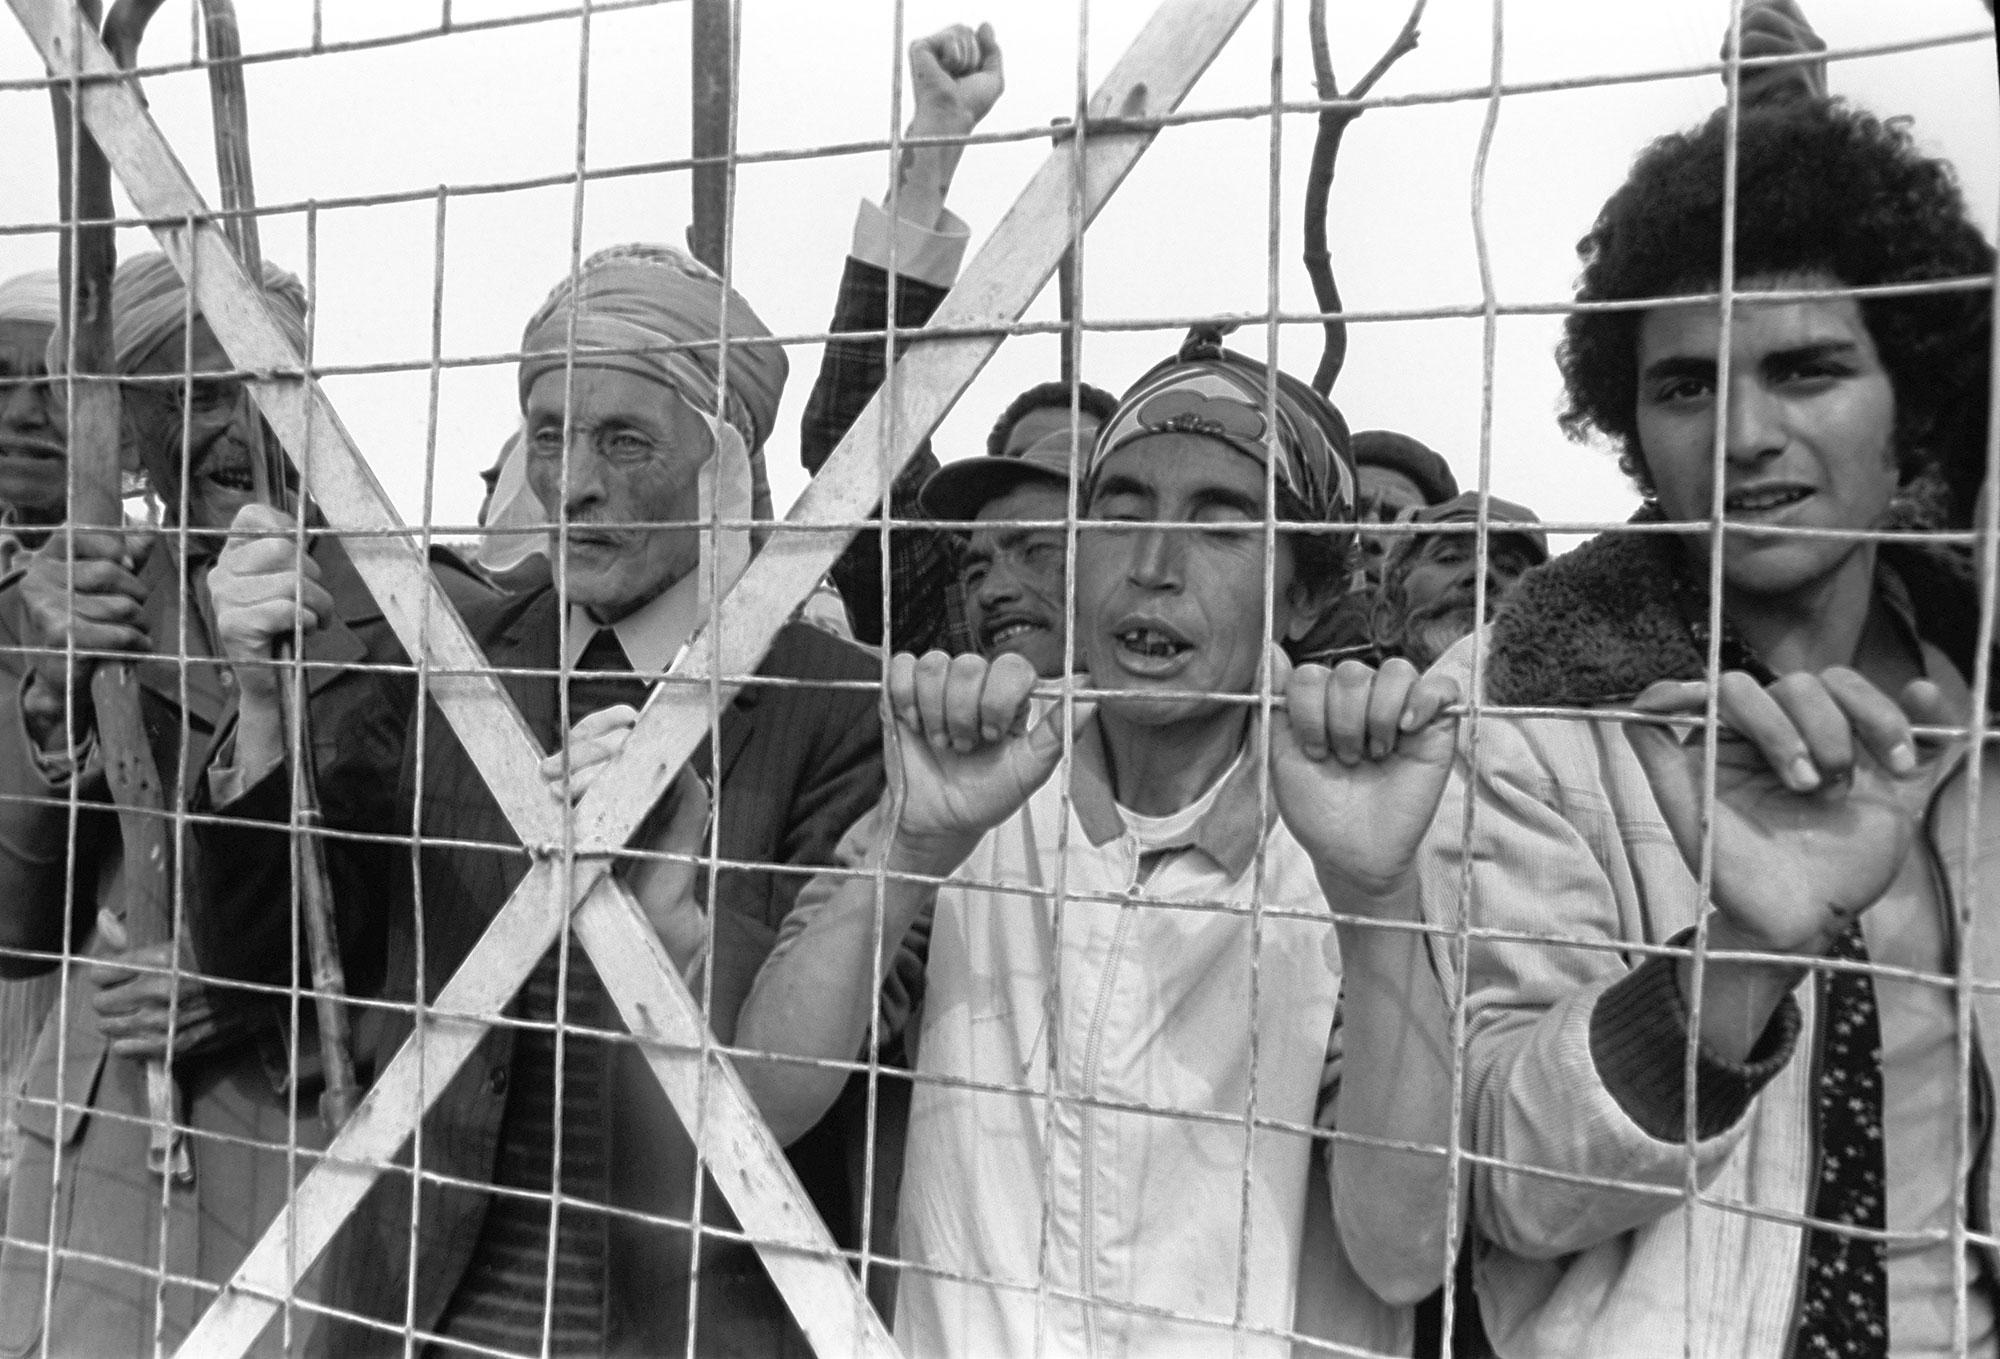 Des harkis manifestent le 2 juin 1975 devant le camp de harkis de Saint-Maurice l'Ardoise, pour attirer l'attention de l'opinion publique sur leurs conditions de vie. [AFP]